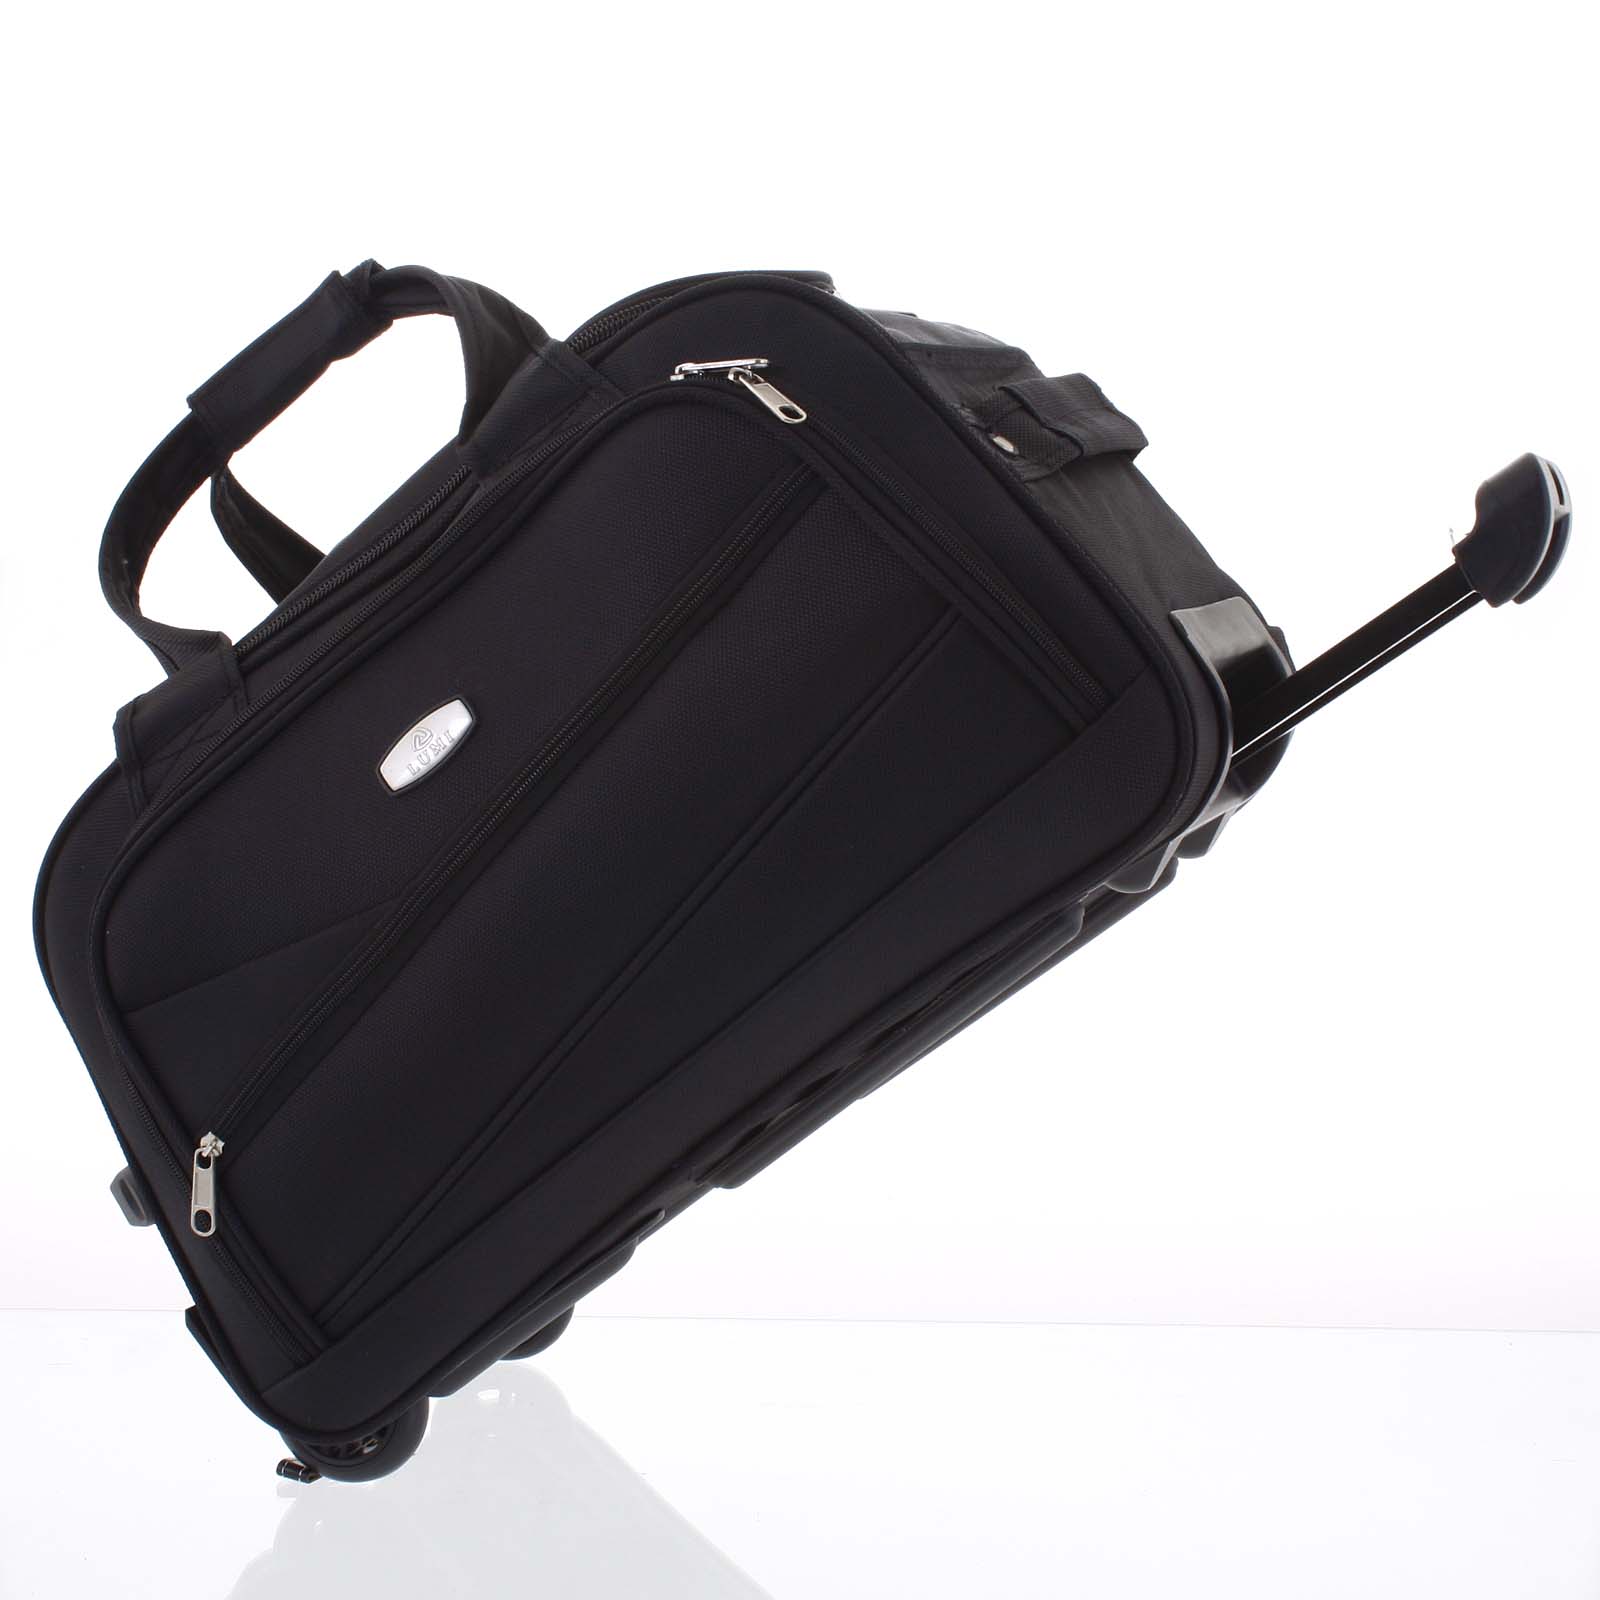 Černá cestovní taška na kolečkách - Lumi Sakk M